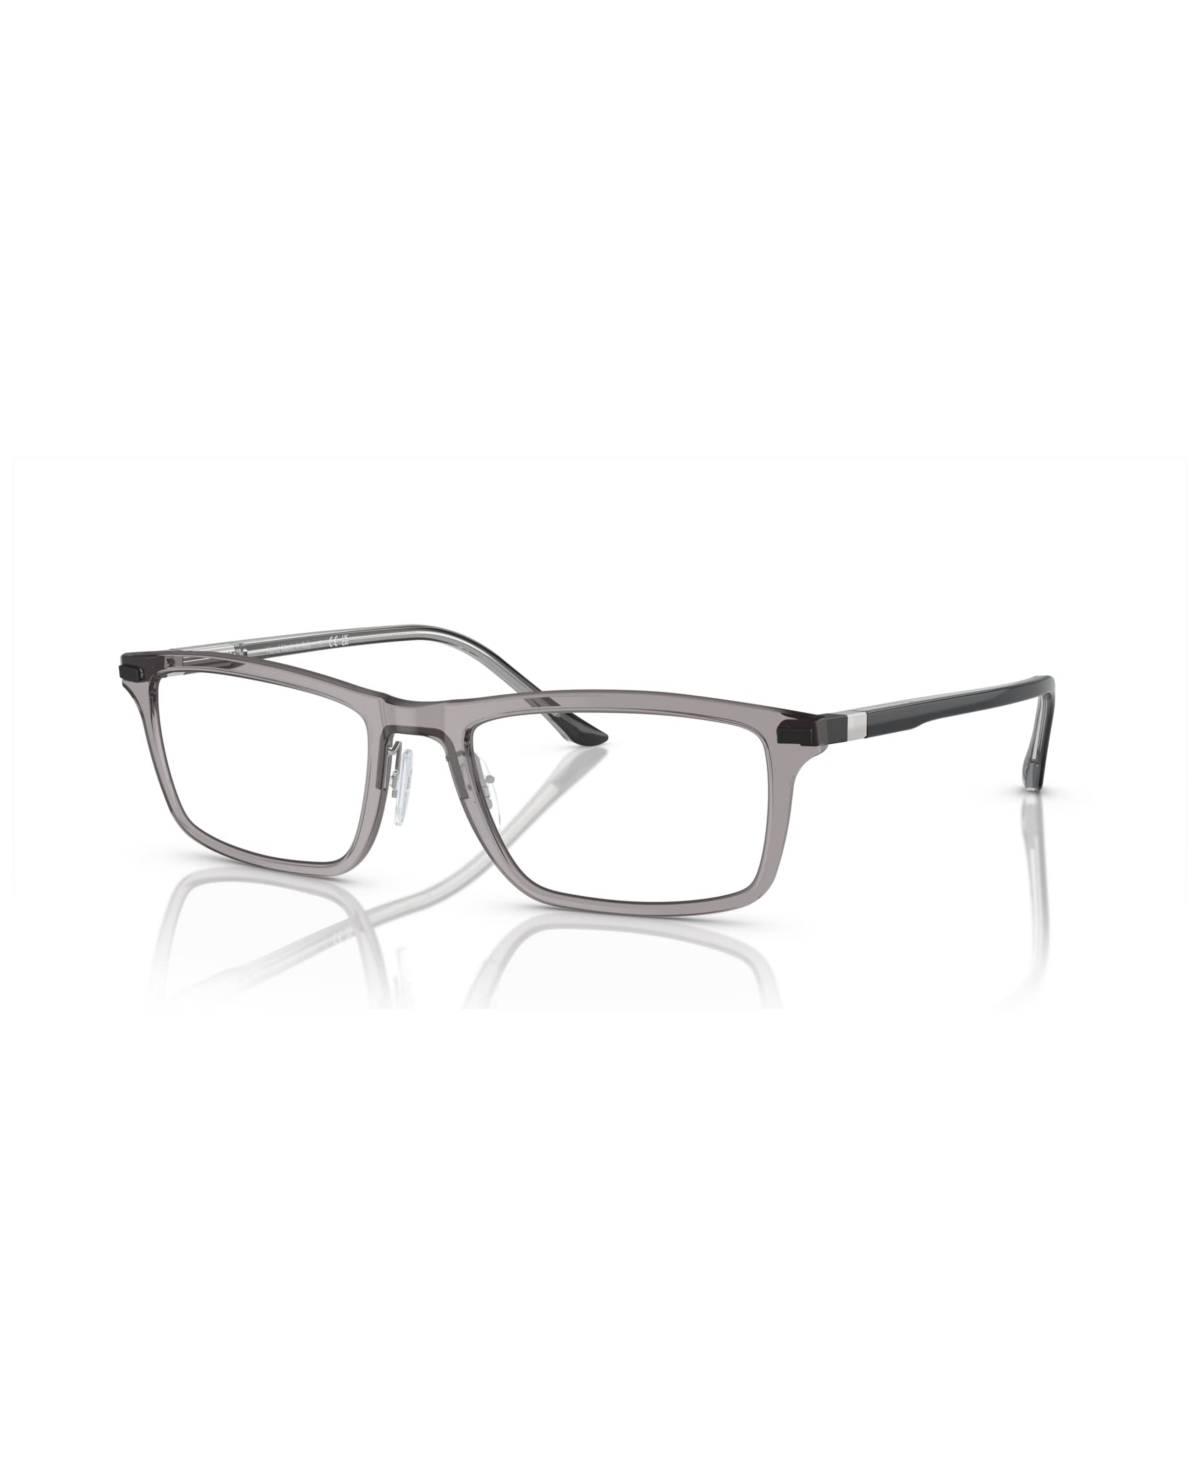 Starck Men's Eyeglasses, SH2081 - Transparent Light Blue